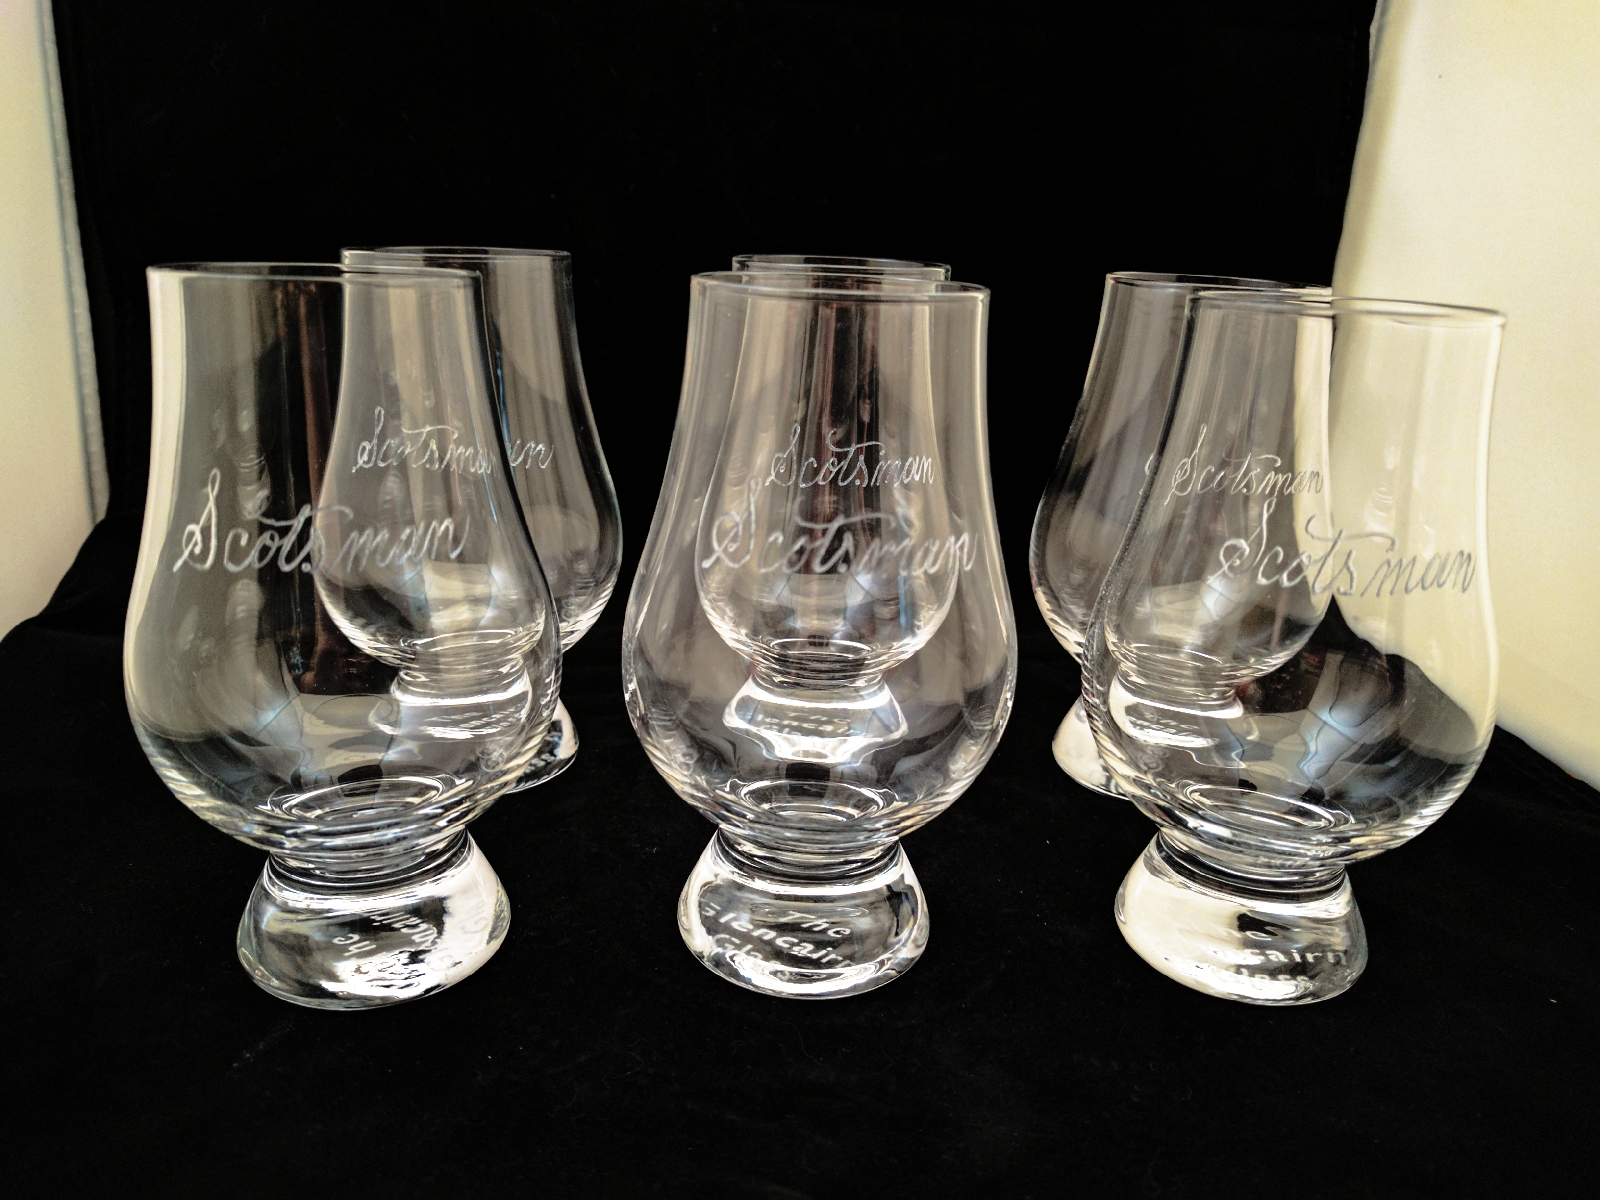 Glencairn Scotland Themed Whisky Glass